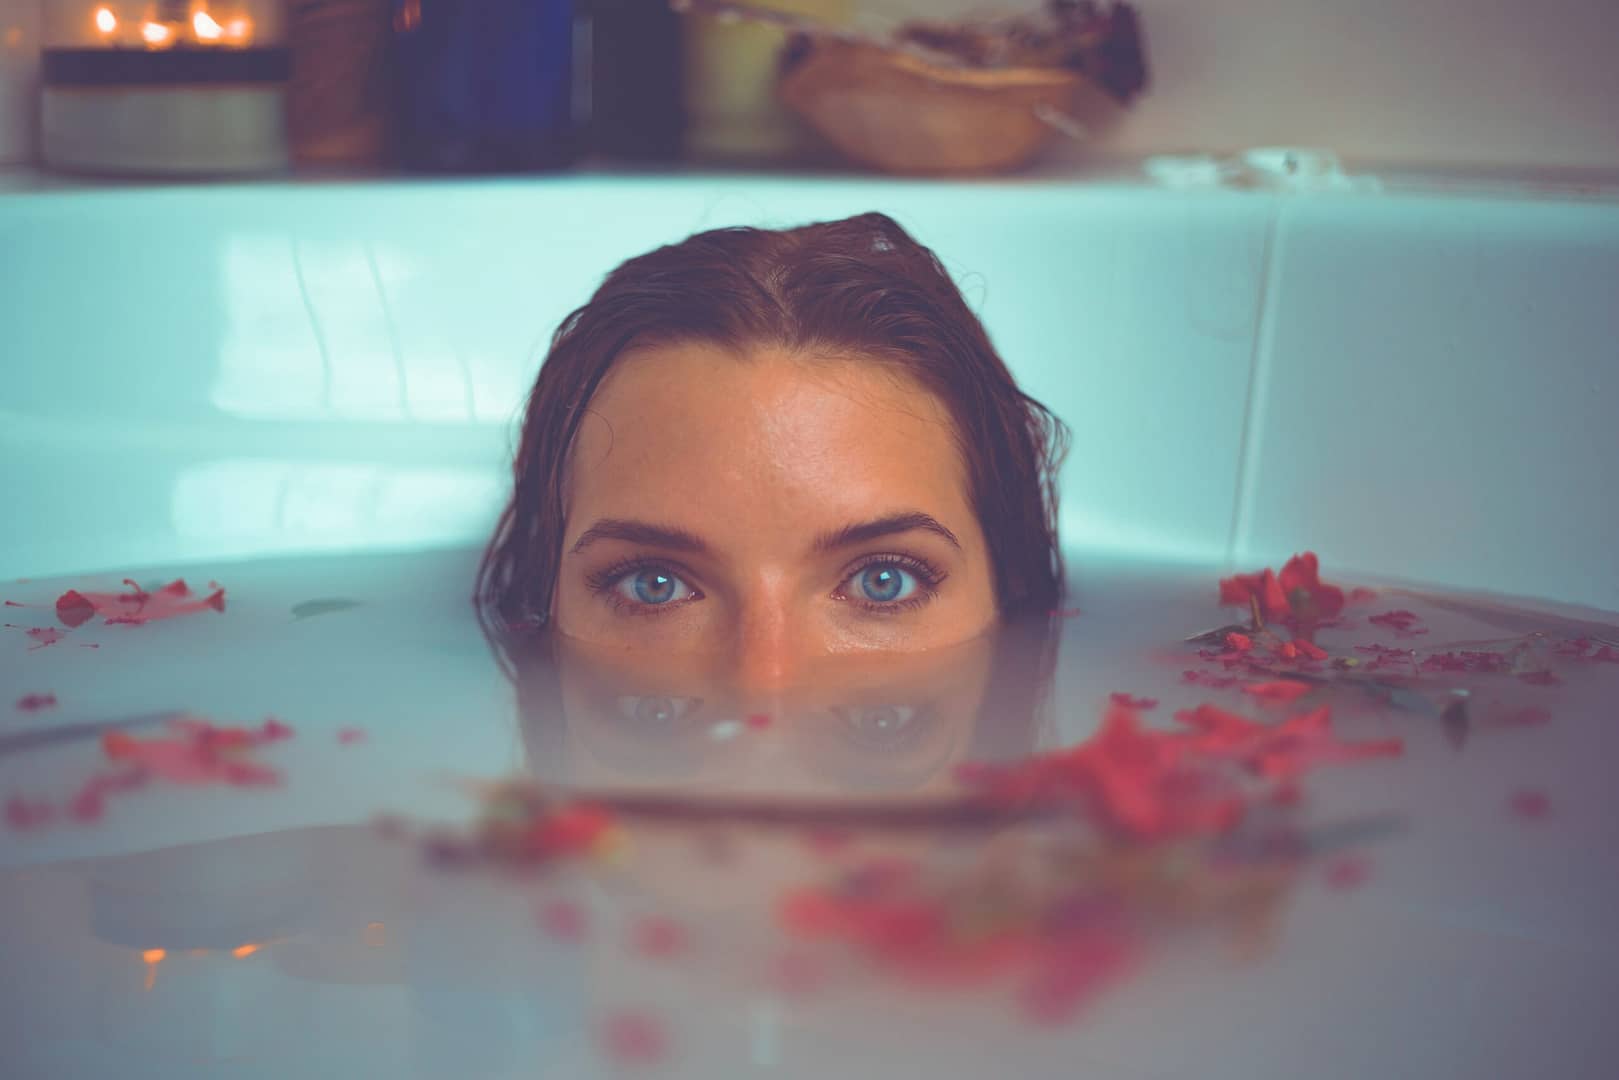 La salle de bain une femme dans sa baignoire d'eau chaude on ne distingue que ses yeux